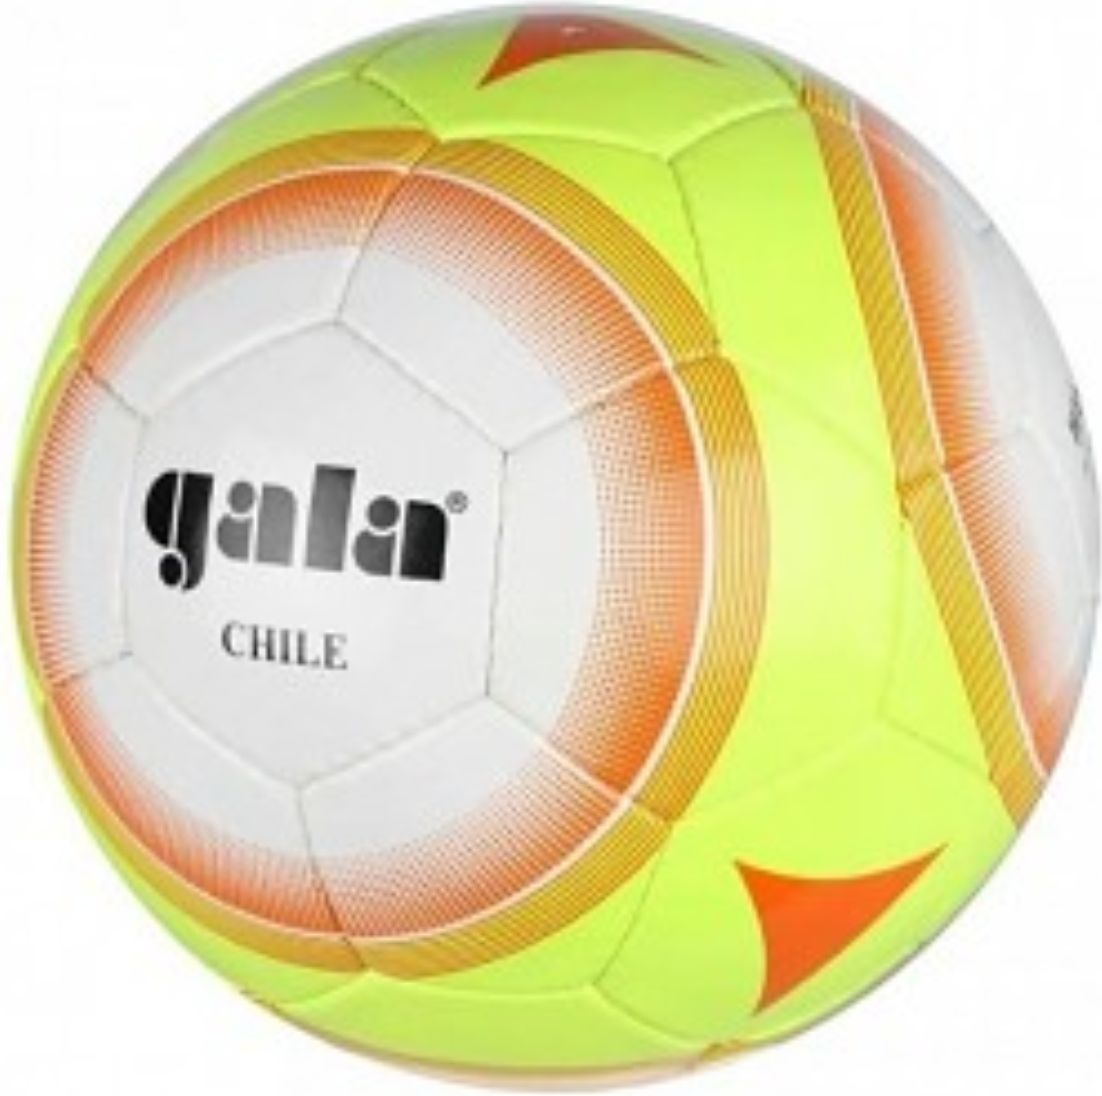 Gala Chile - obrázek 1